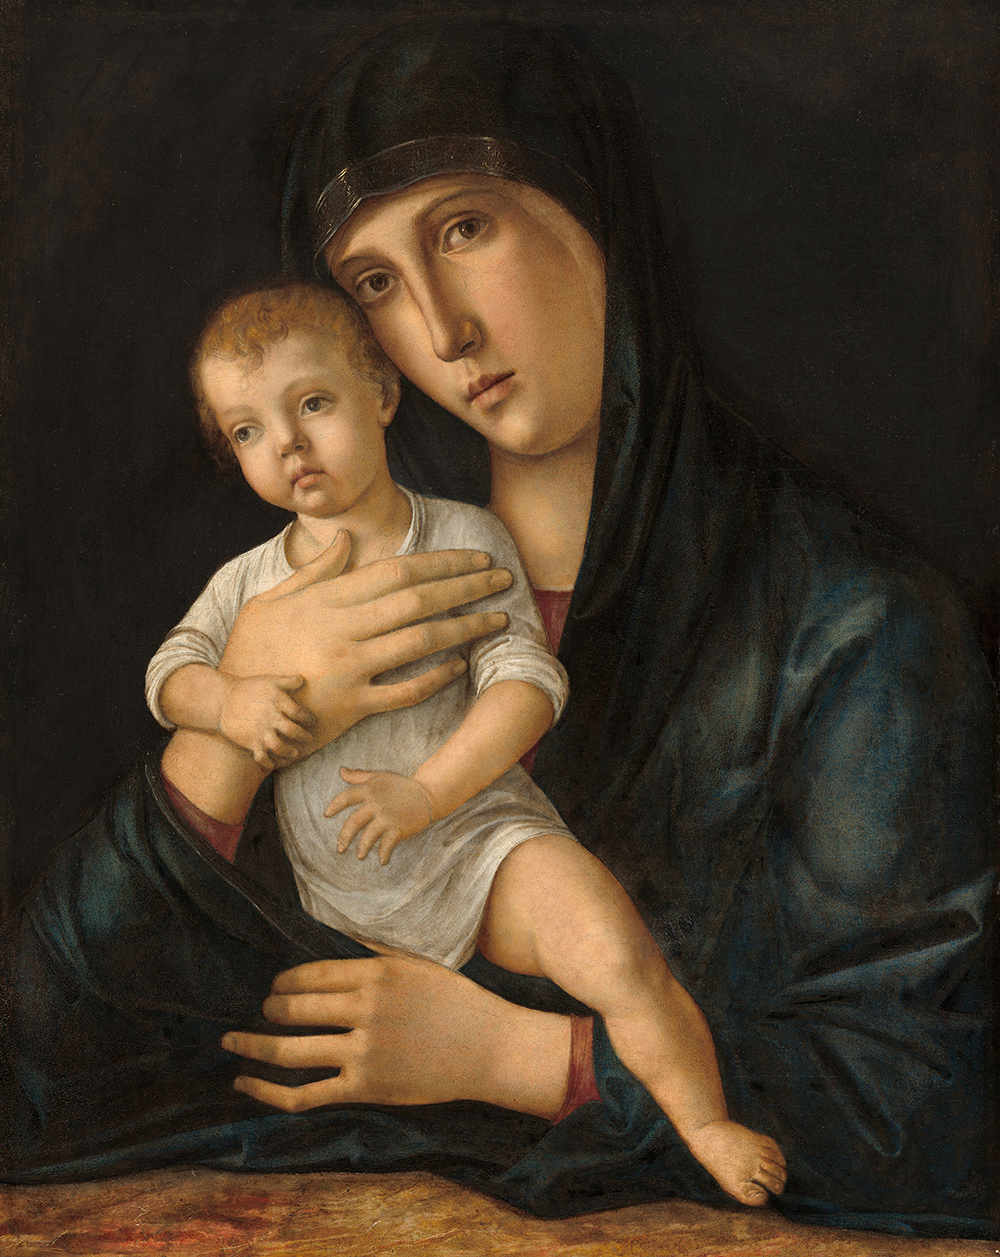 Pintura de la Virgen mirando directamente al espectador. Ella está cargando a un niño.